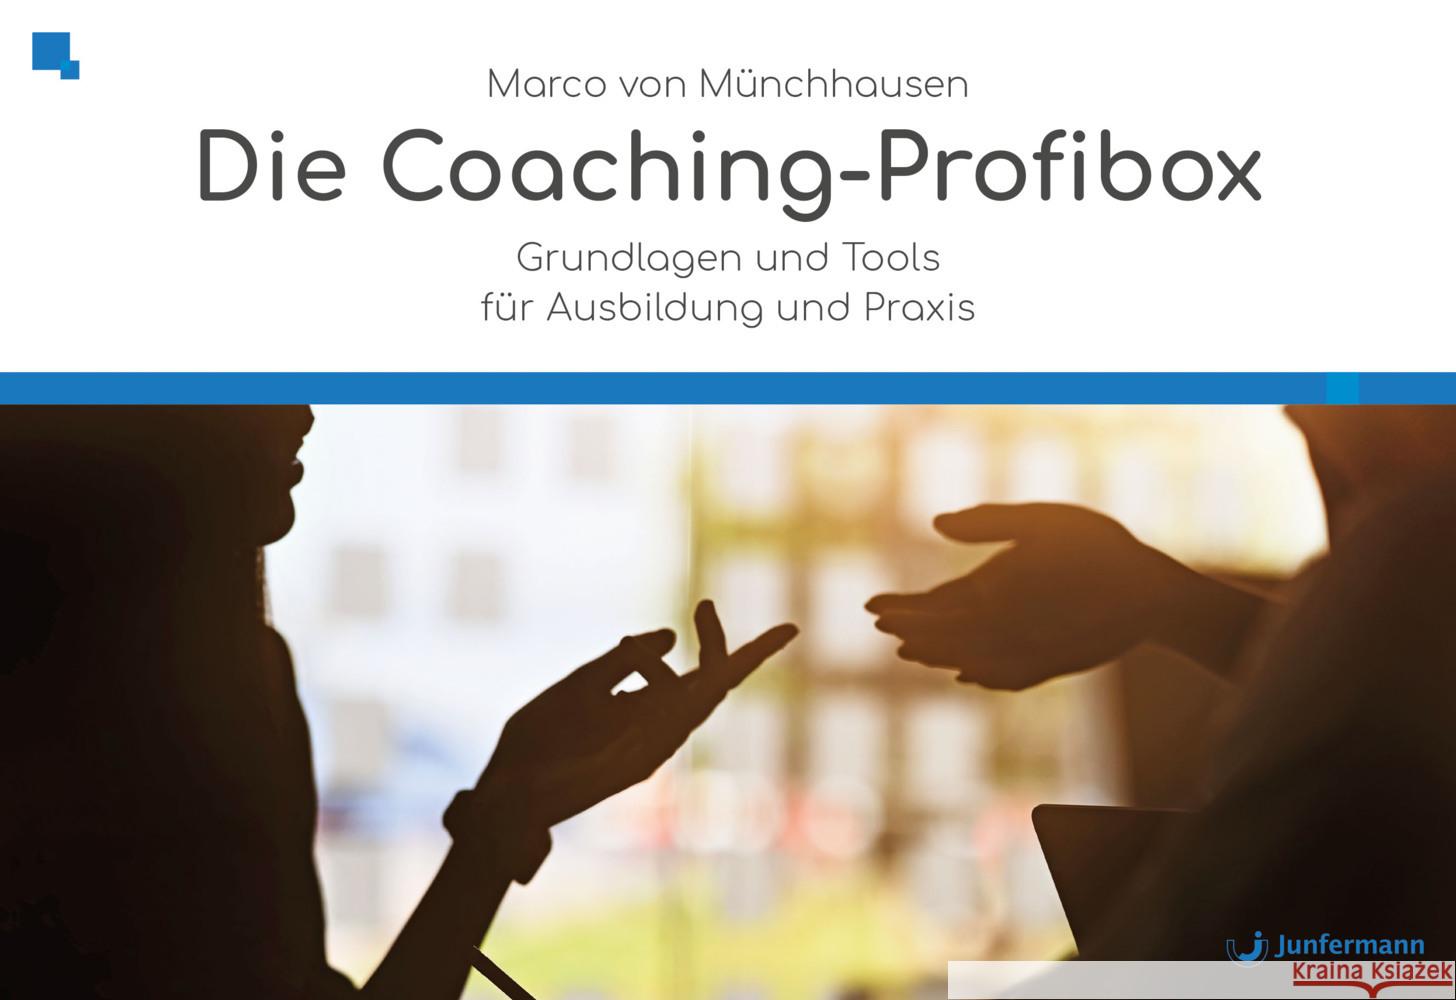 Die Coaching-Profibox Püschel, Ingo P., Münchhausen, Marco von 9783749503490 Junfermann